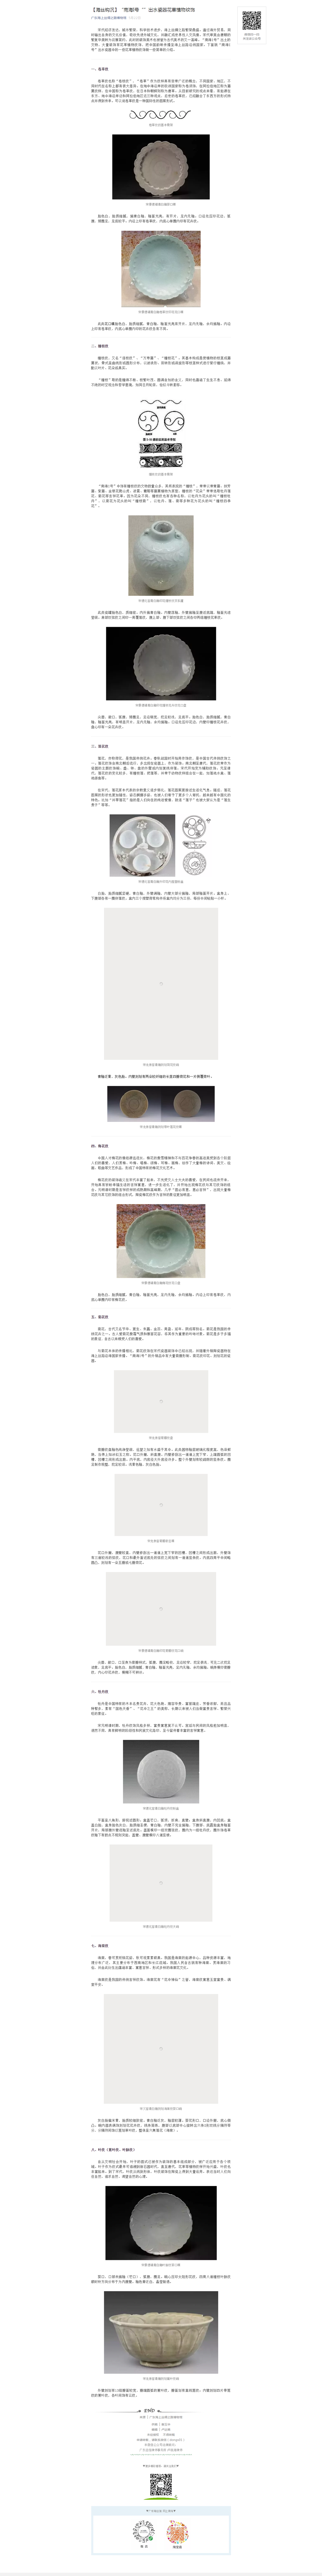 【海丝钩沉】“南海I号“”出水瓷器花草植物纹饰.png